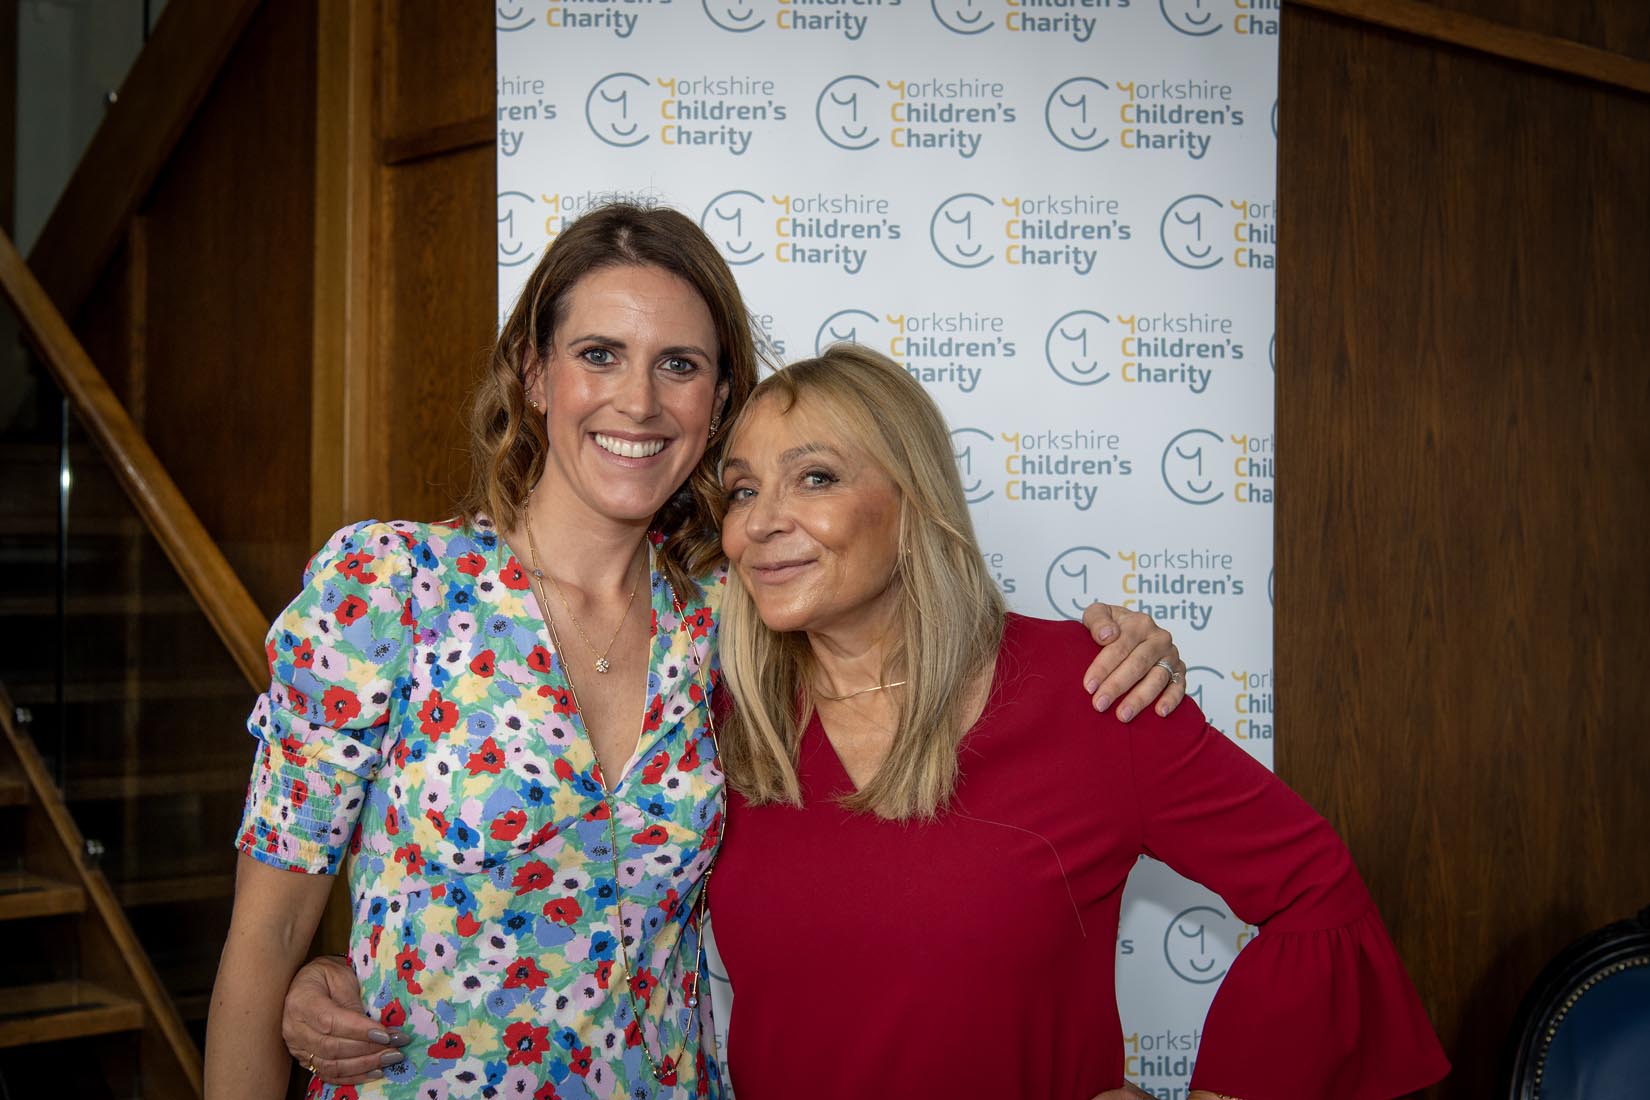 Bridget Jones creator Helen Fielding becomes Ambassador for Yorkshire Children’s Charity 